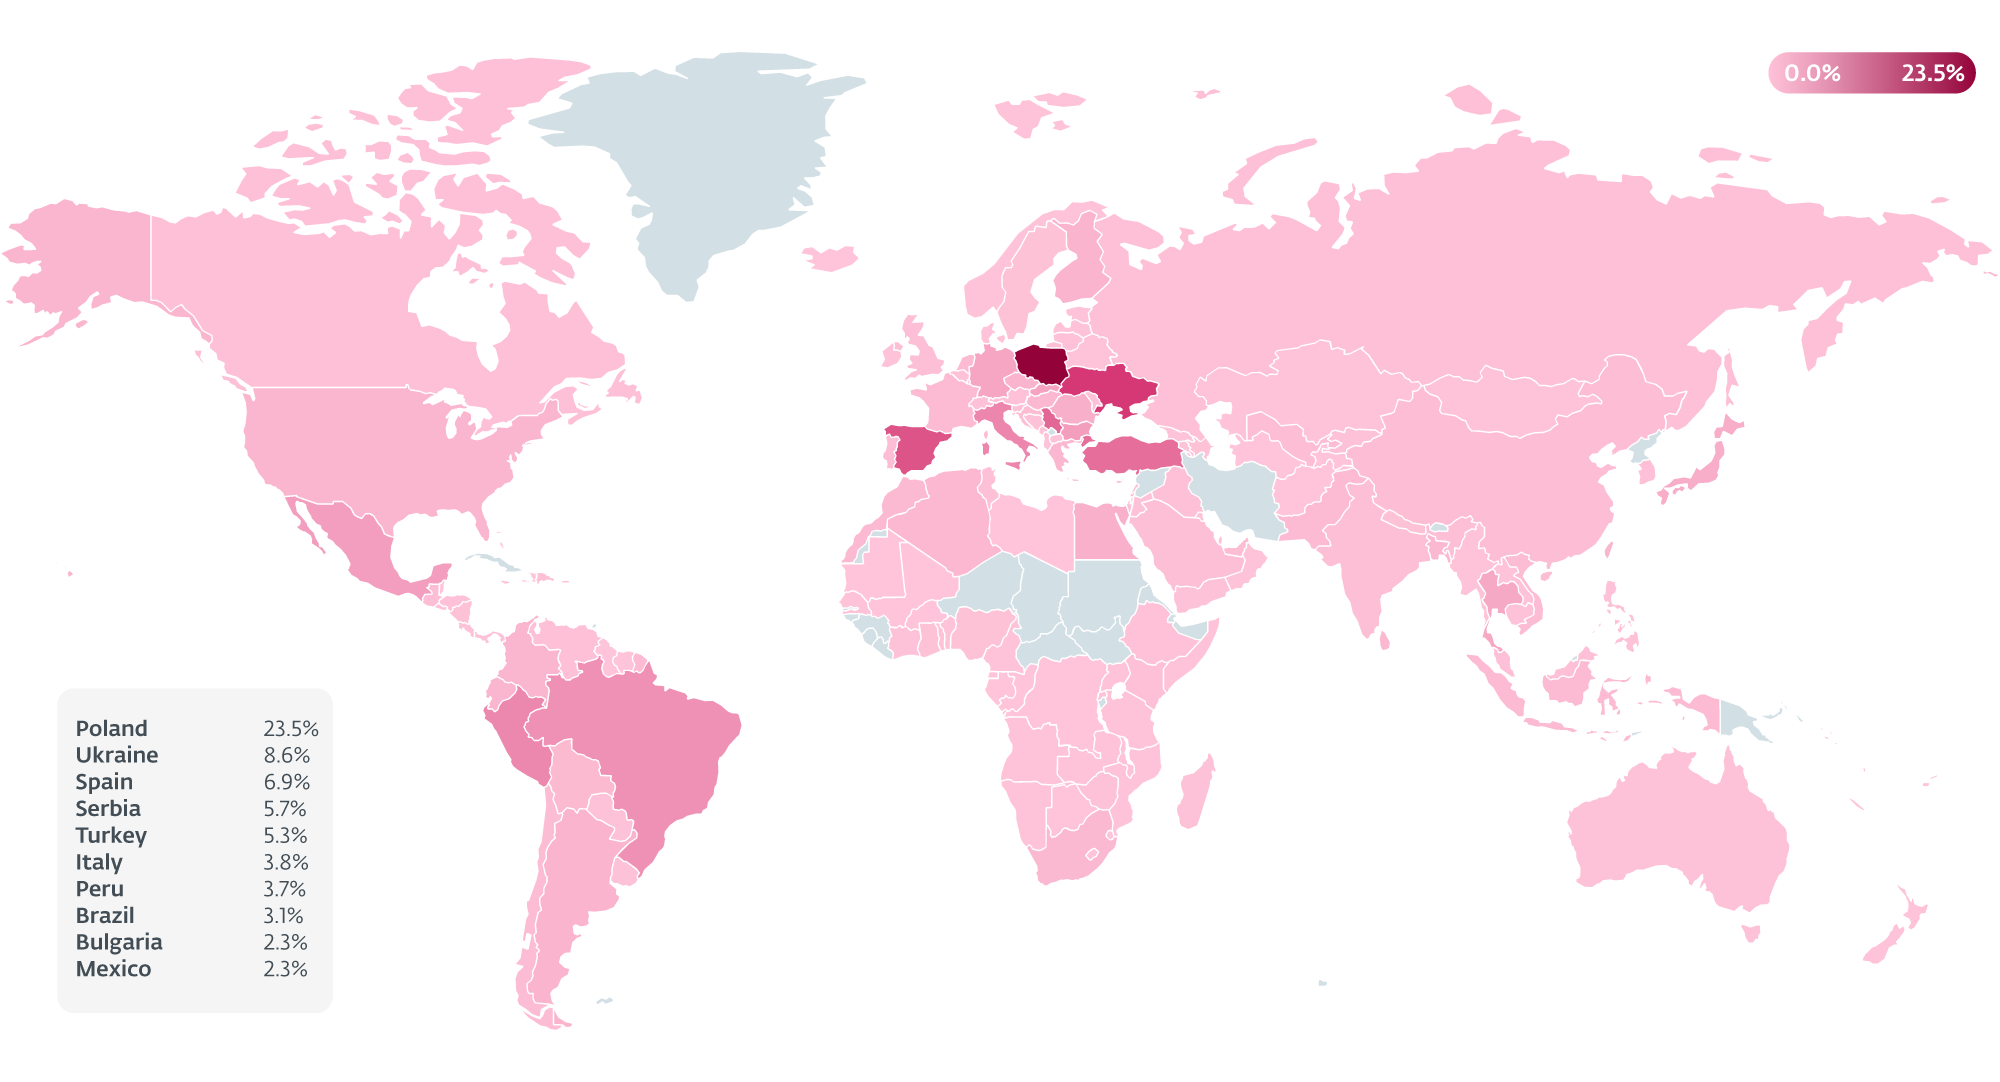 Figur 3. Värmekarta över länder som påverkas av AceCryptor, enligt ESET-telemetri